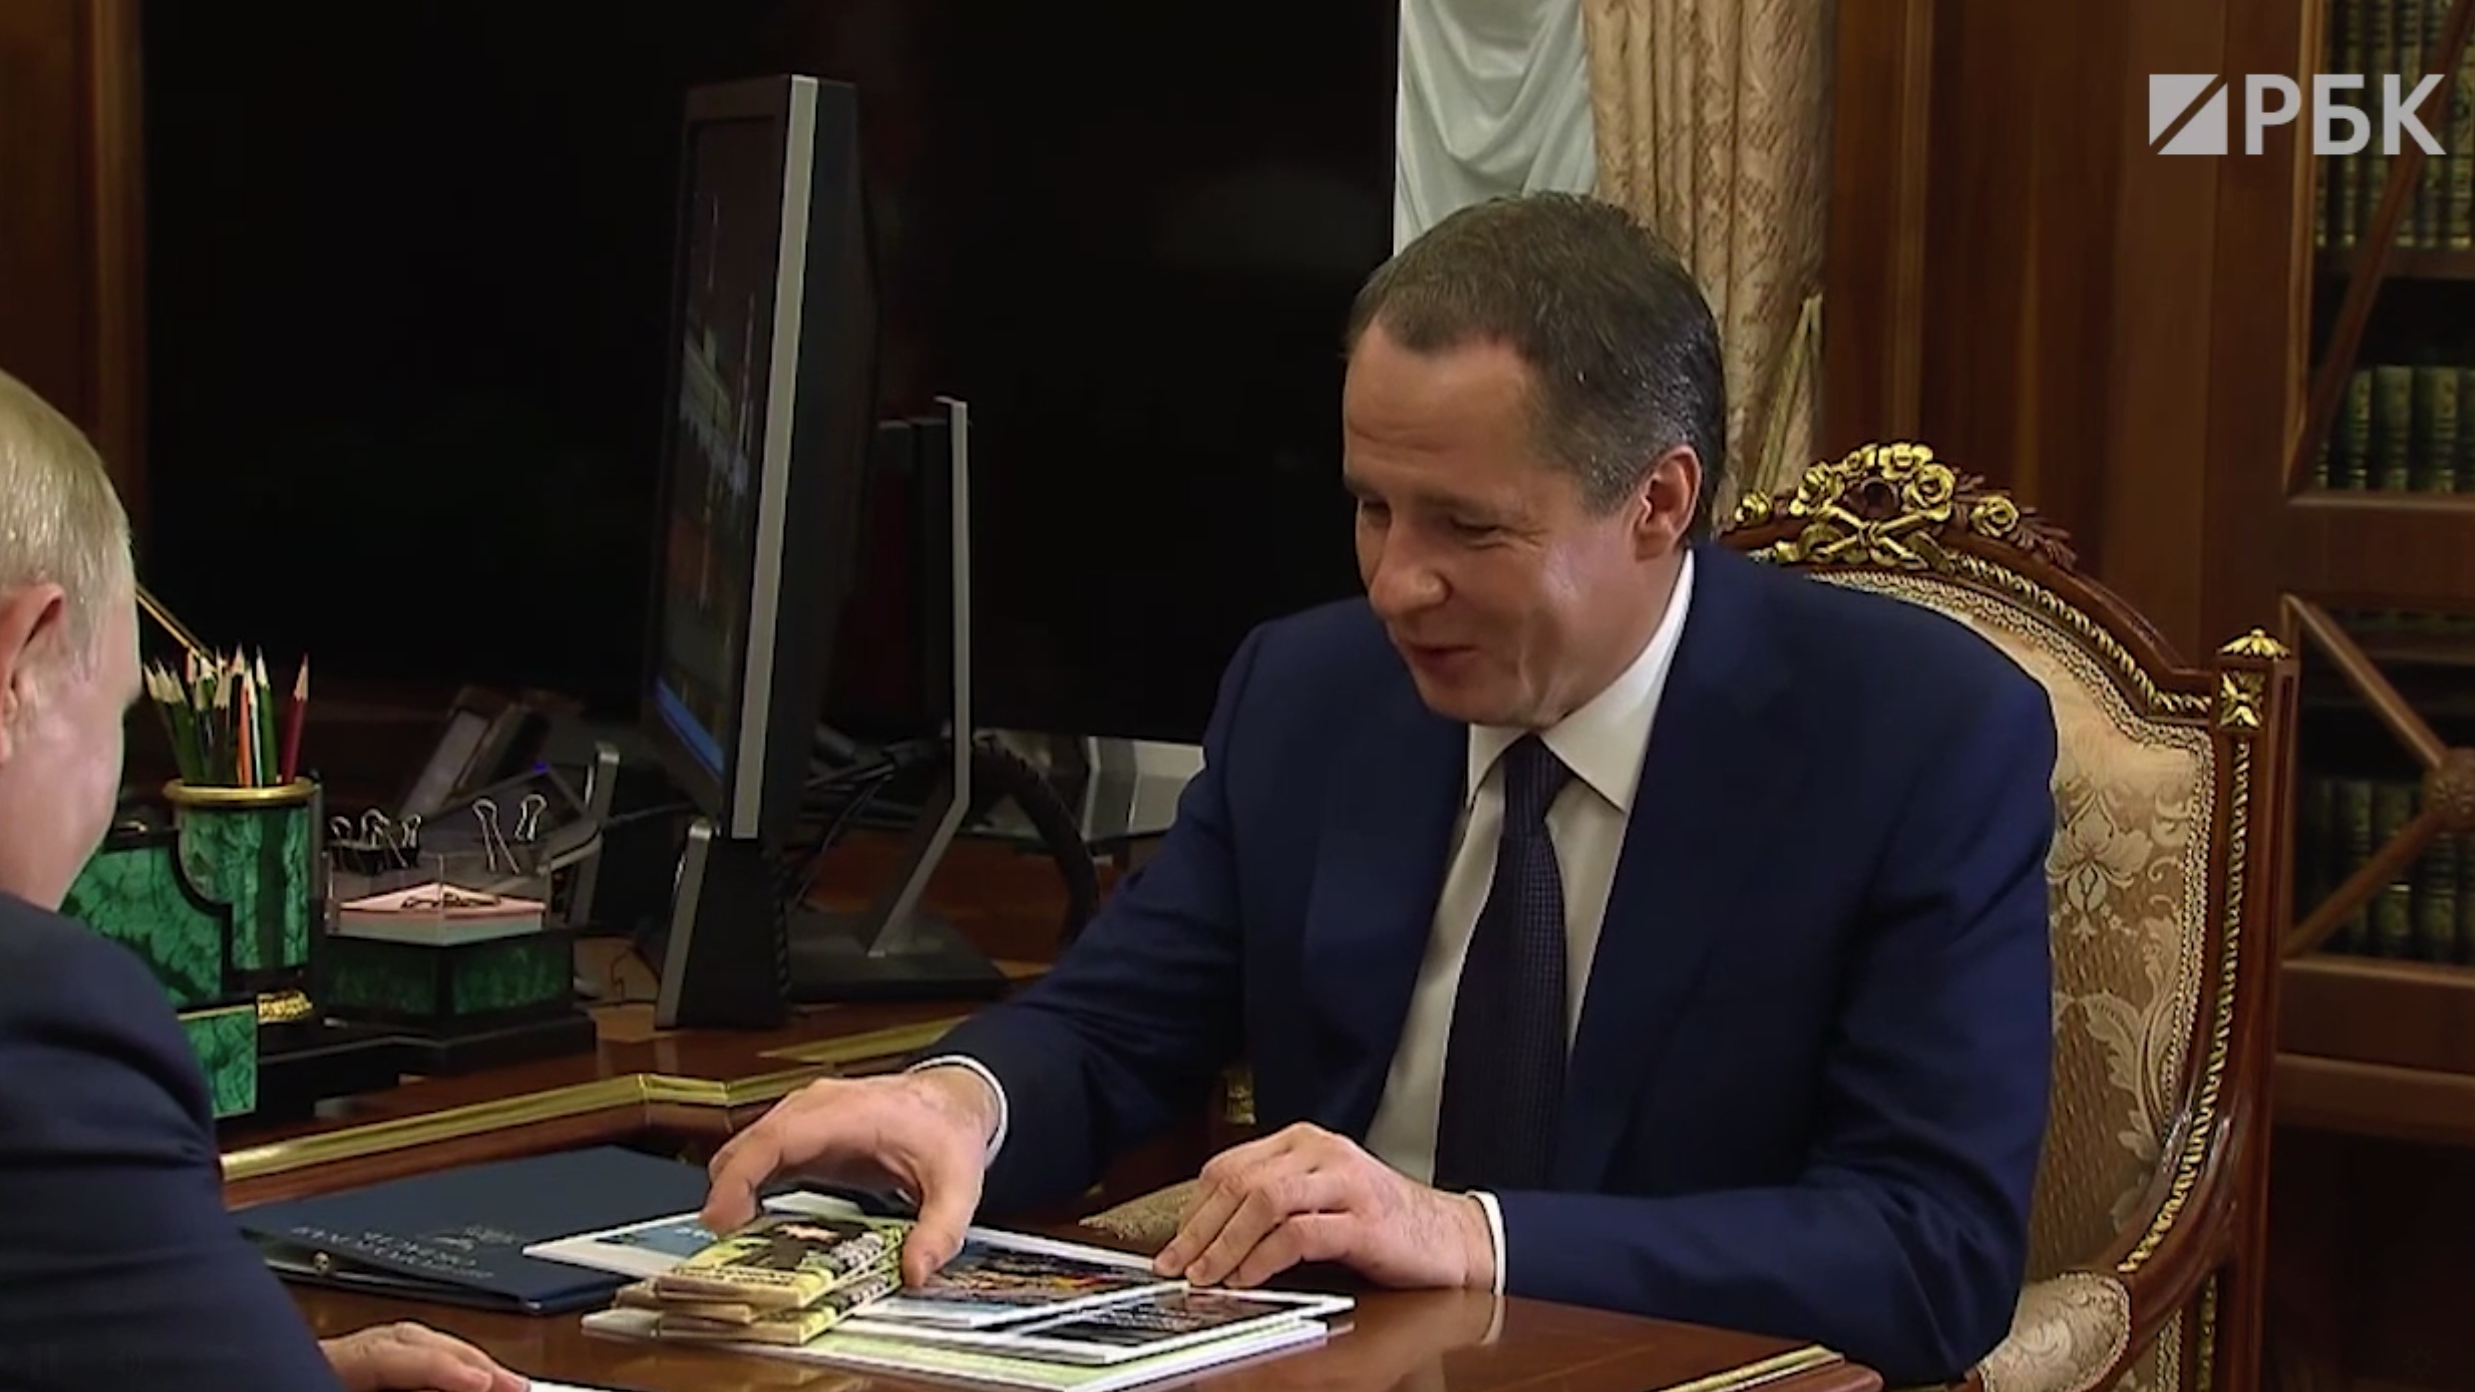 Гладков подарил Путину шоколадку «Алешка» и рассказал историю ее создания